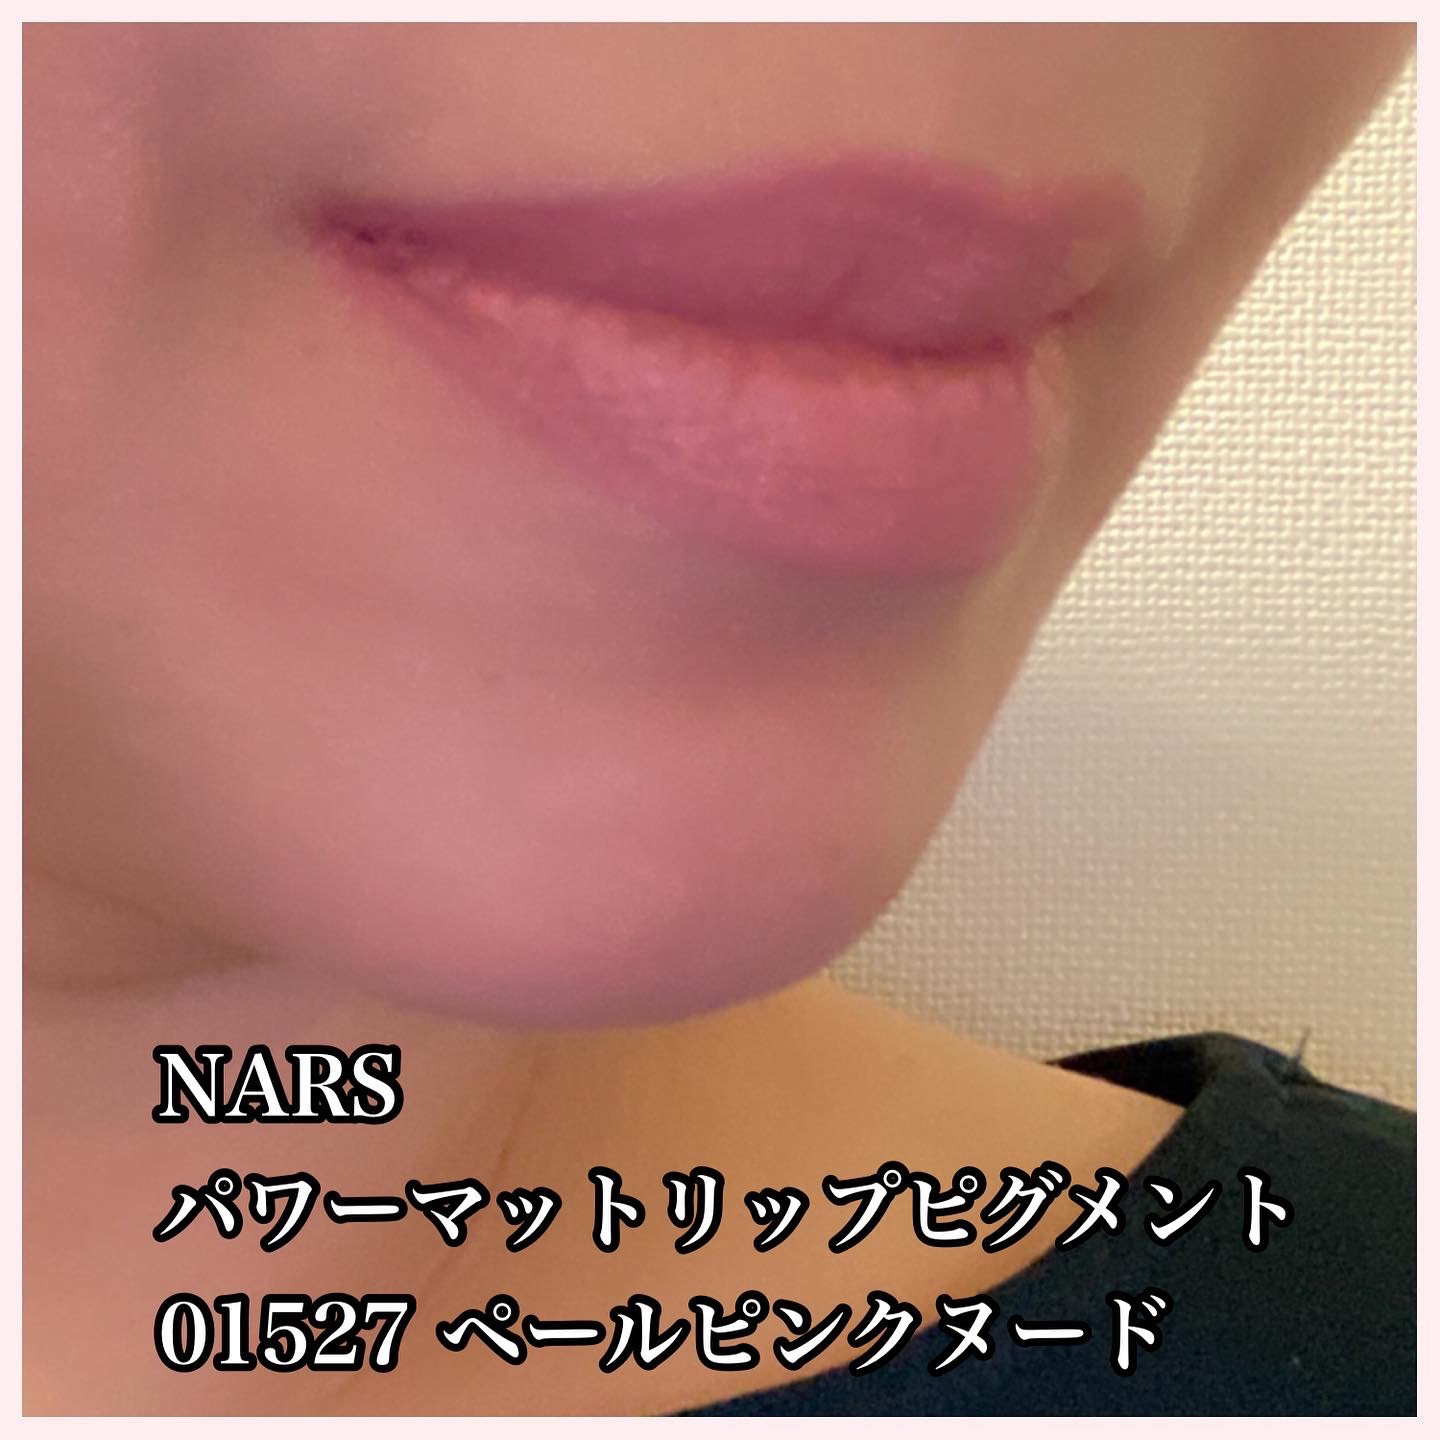 NARS パワーマットリップピグメントを使ったfuka712さんのクチコミ画像4